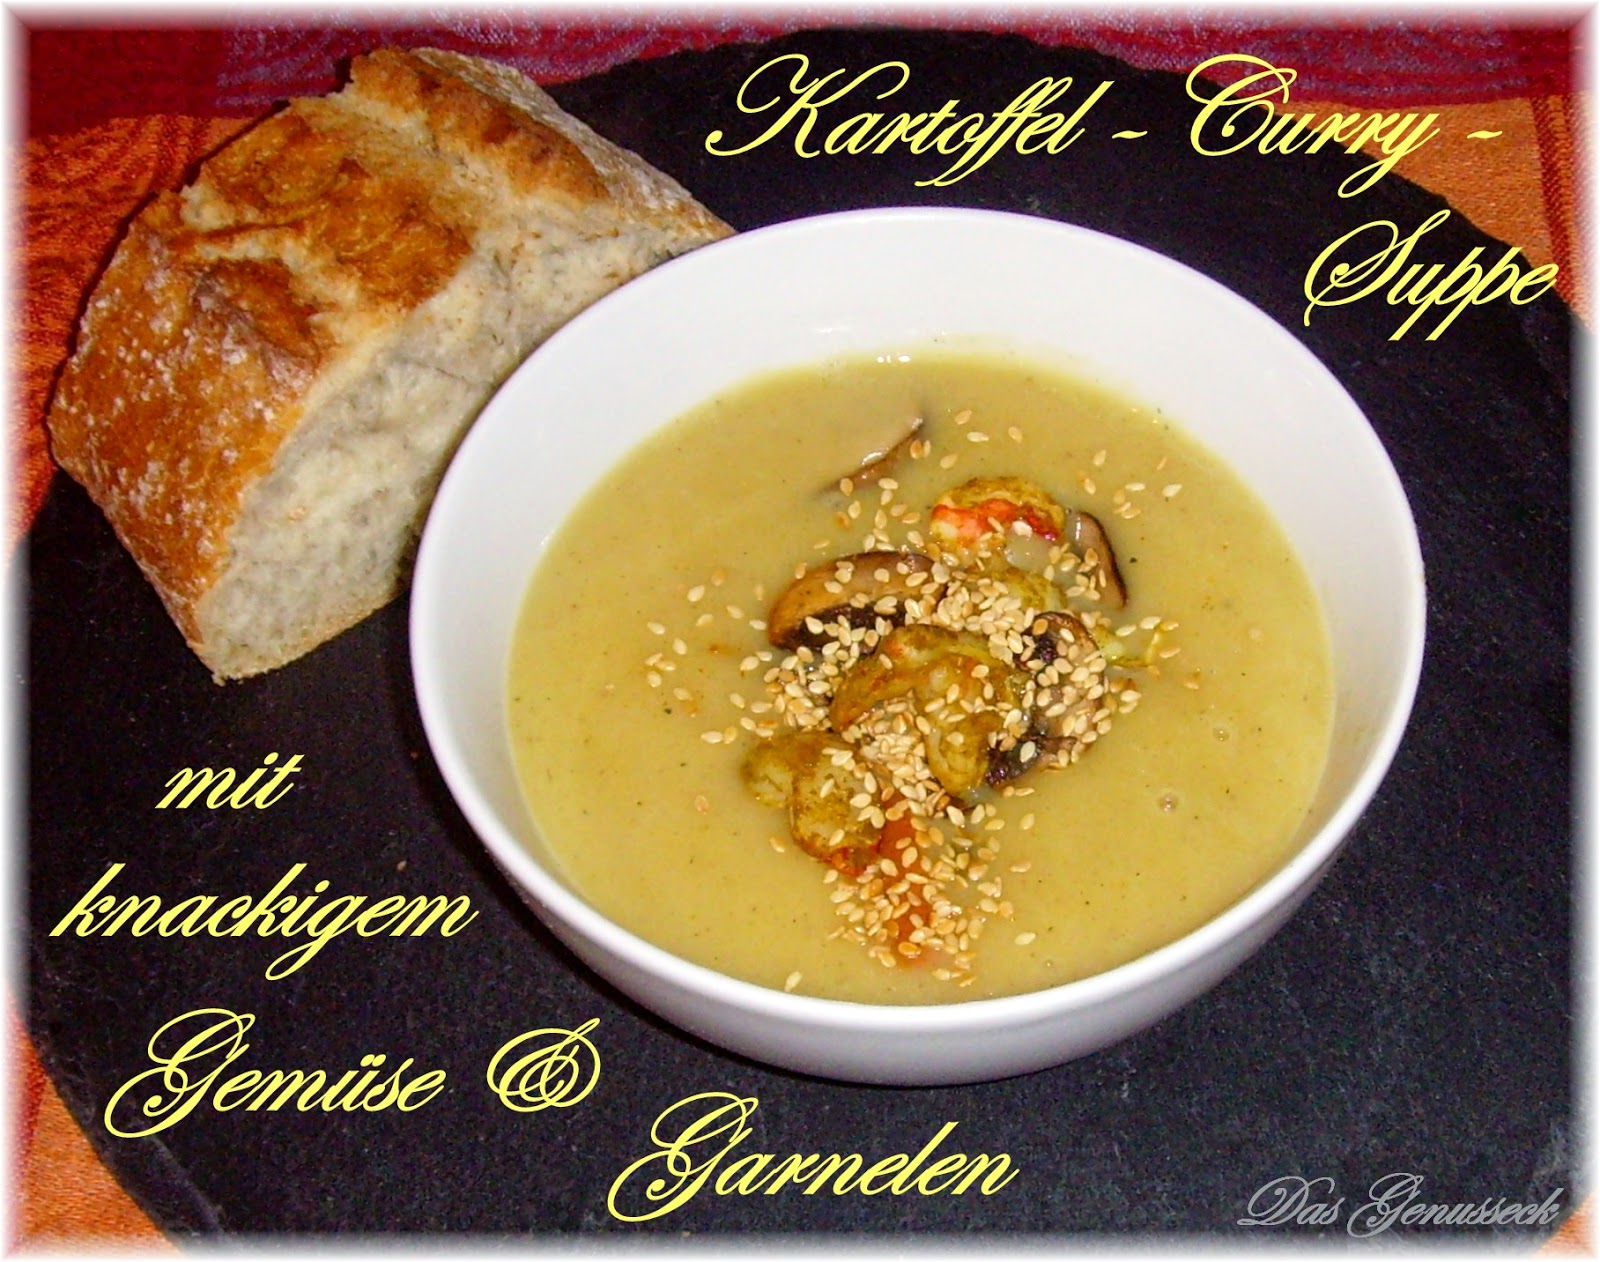 Das Genusseck: Kartoffel-Curry-Suppe mit knackigem Gemüse und Garnelen